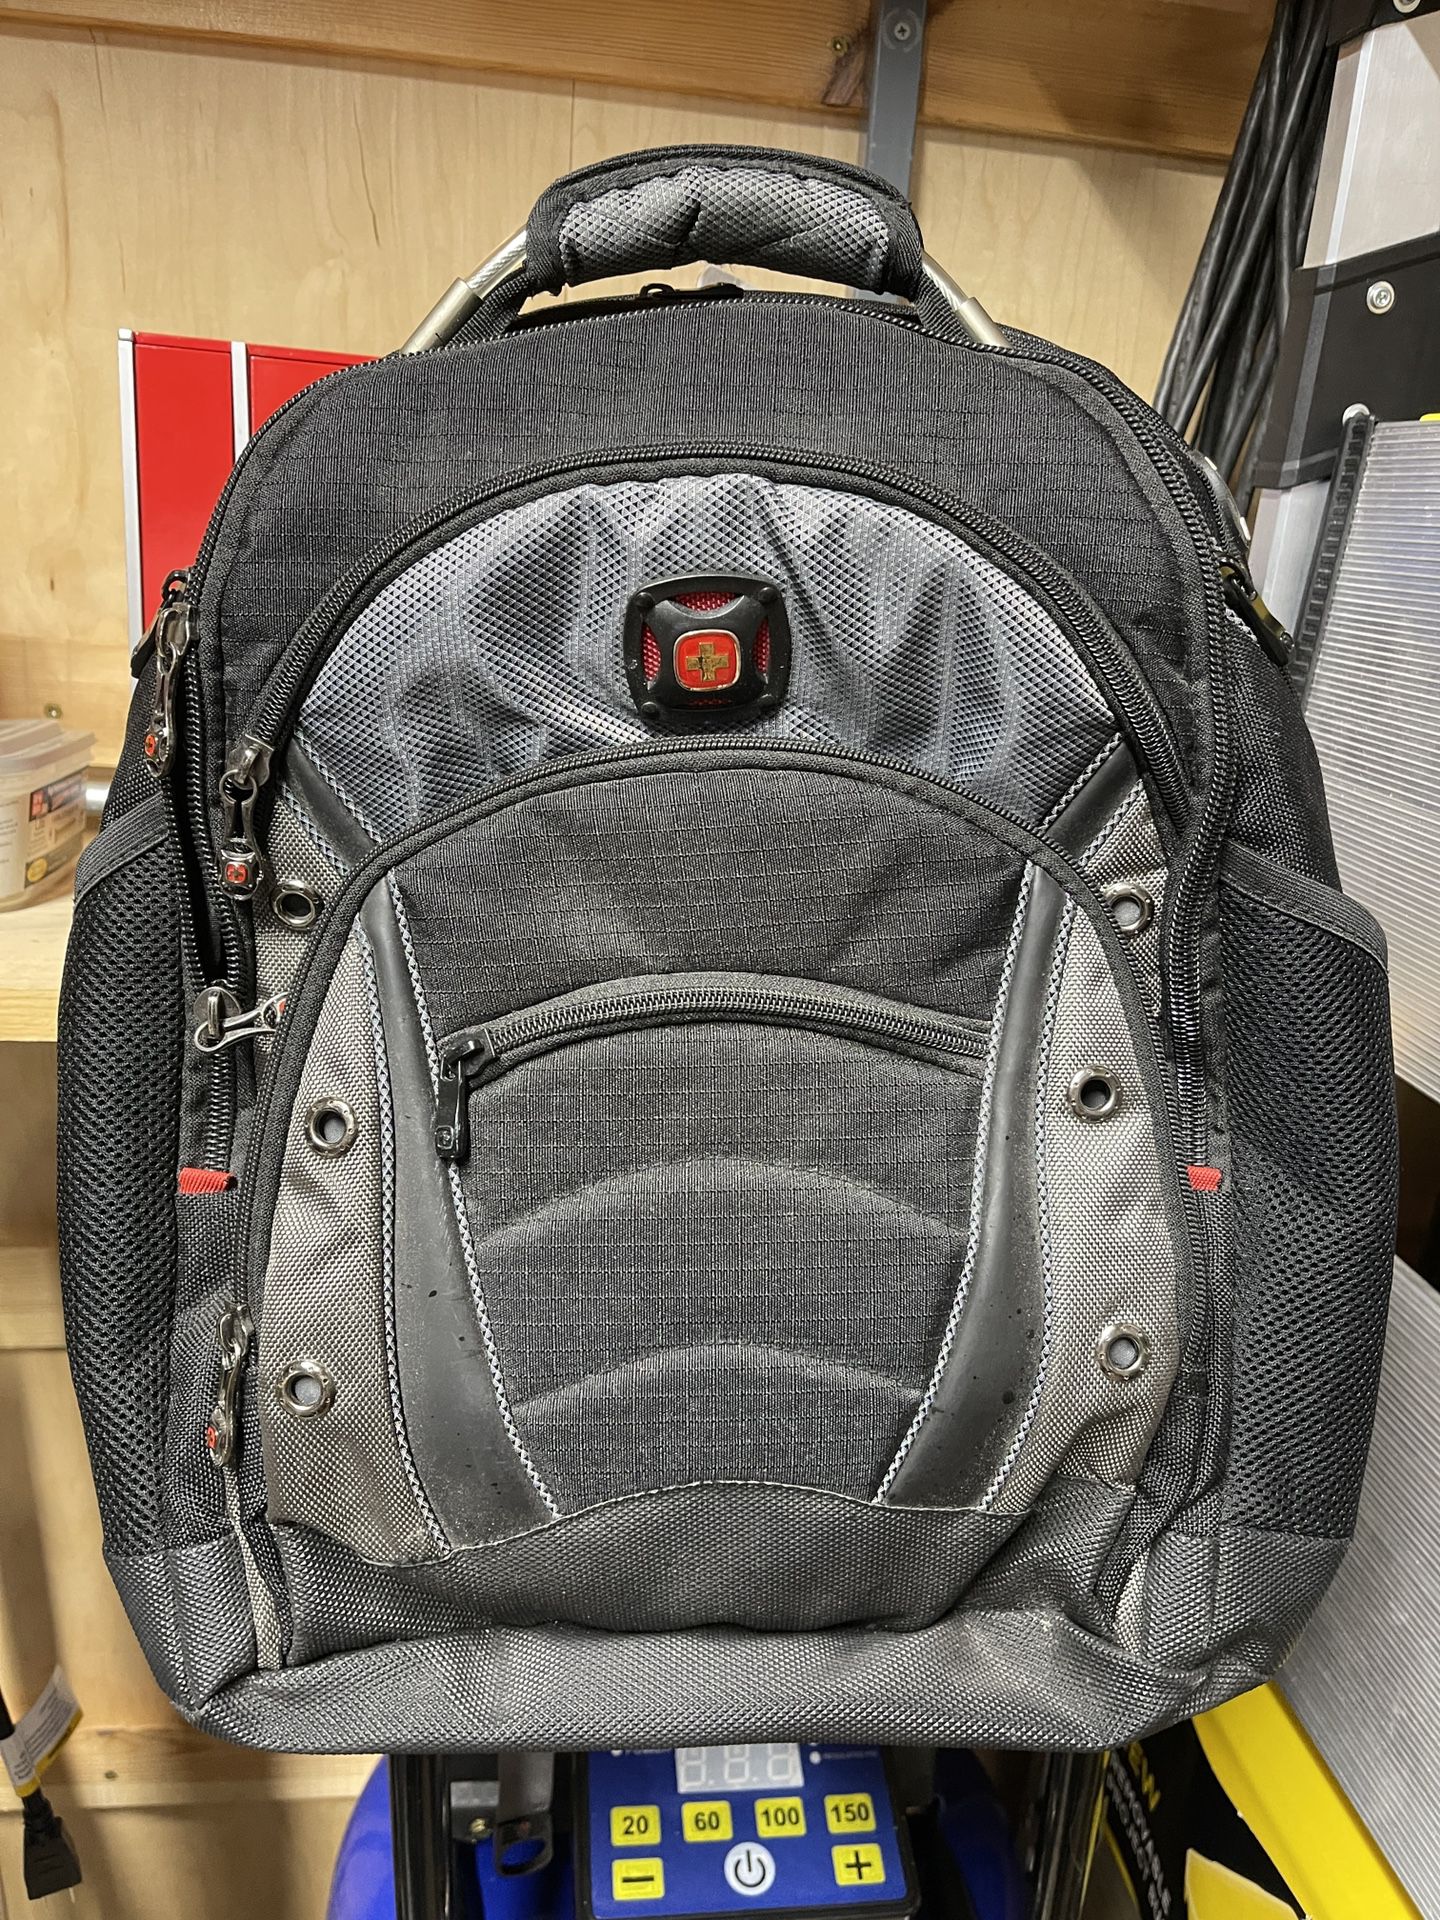 SwissGear Backpack    